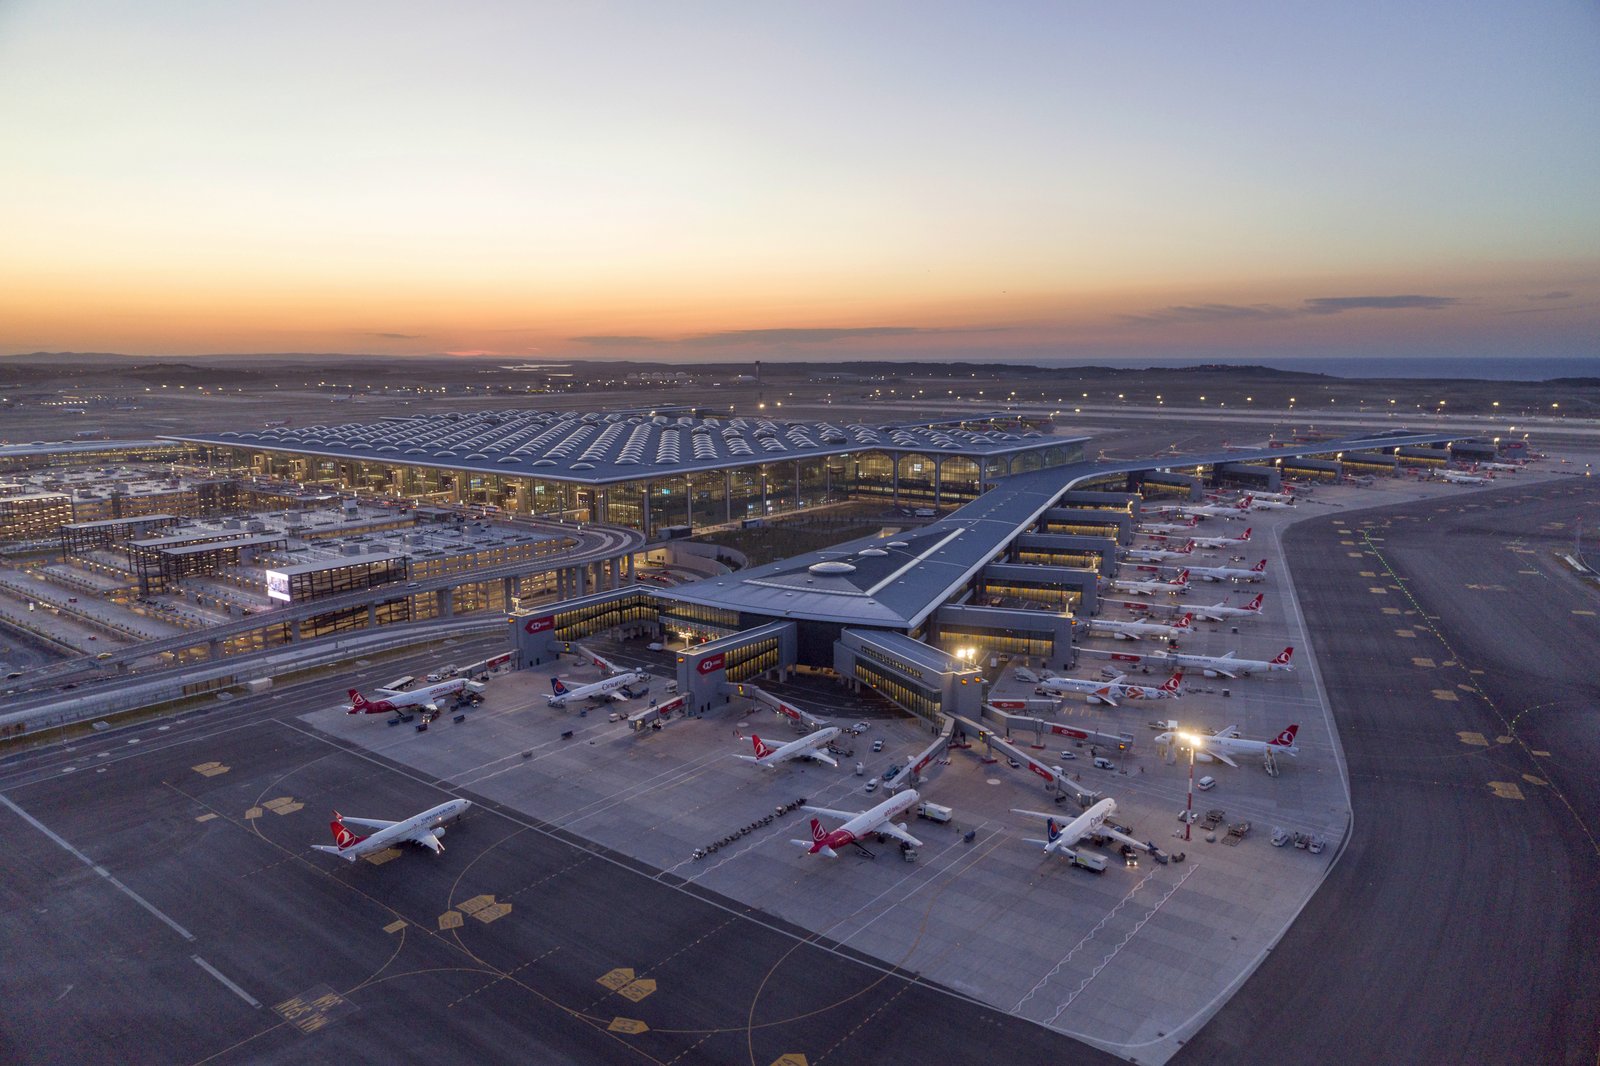 Ismail Polat, Gerente Sénior de Planificación de iGA Aeropuerto de Estambul: “Estamos animando a aerolíneas a conectar Latinoamérica con otras partes del mundo a través de nuestra ciudad”